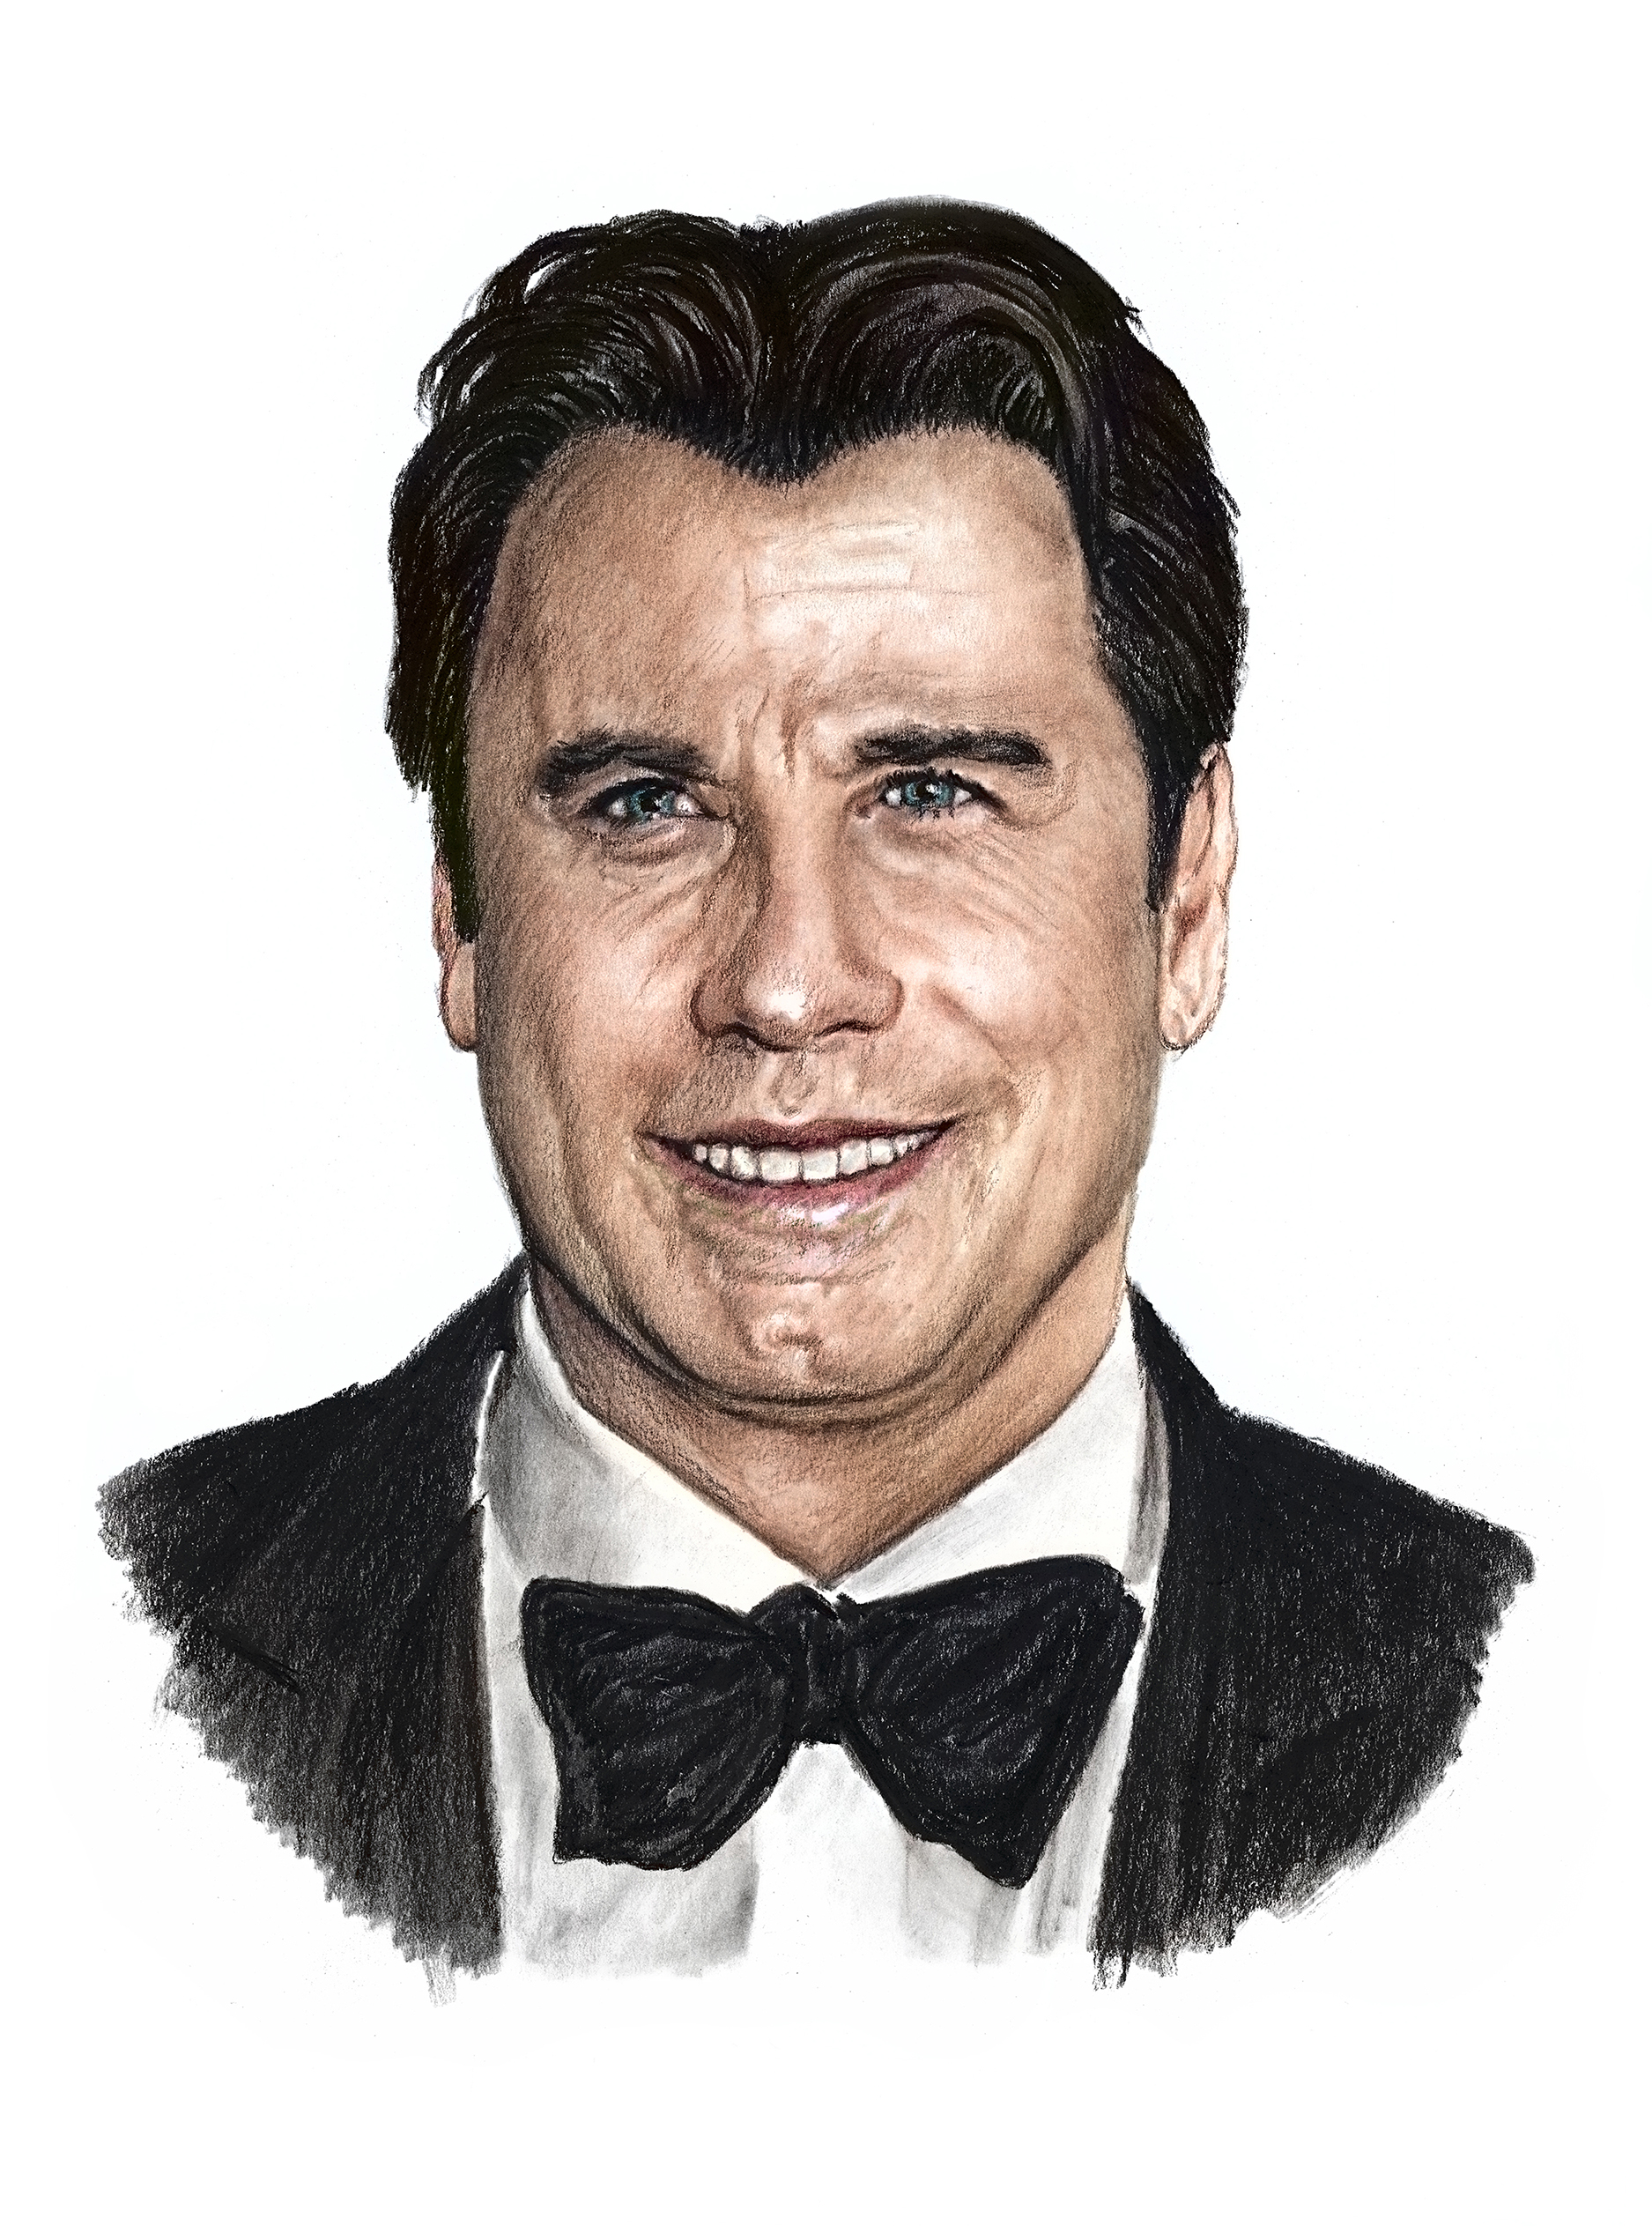 John Travolta - reprodukce kresby, kolorovaná - NA OBJEDNÁVKU DO 5 DNŮ